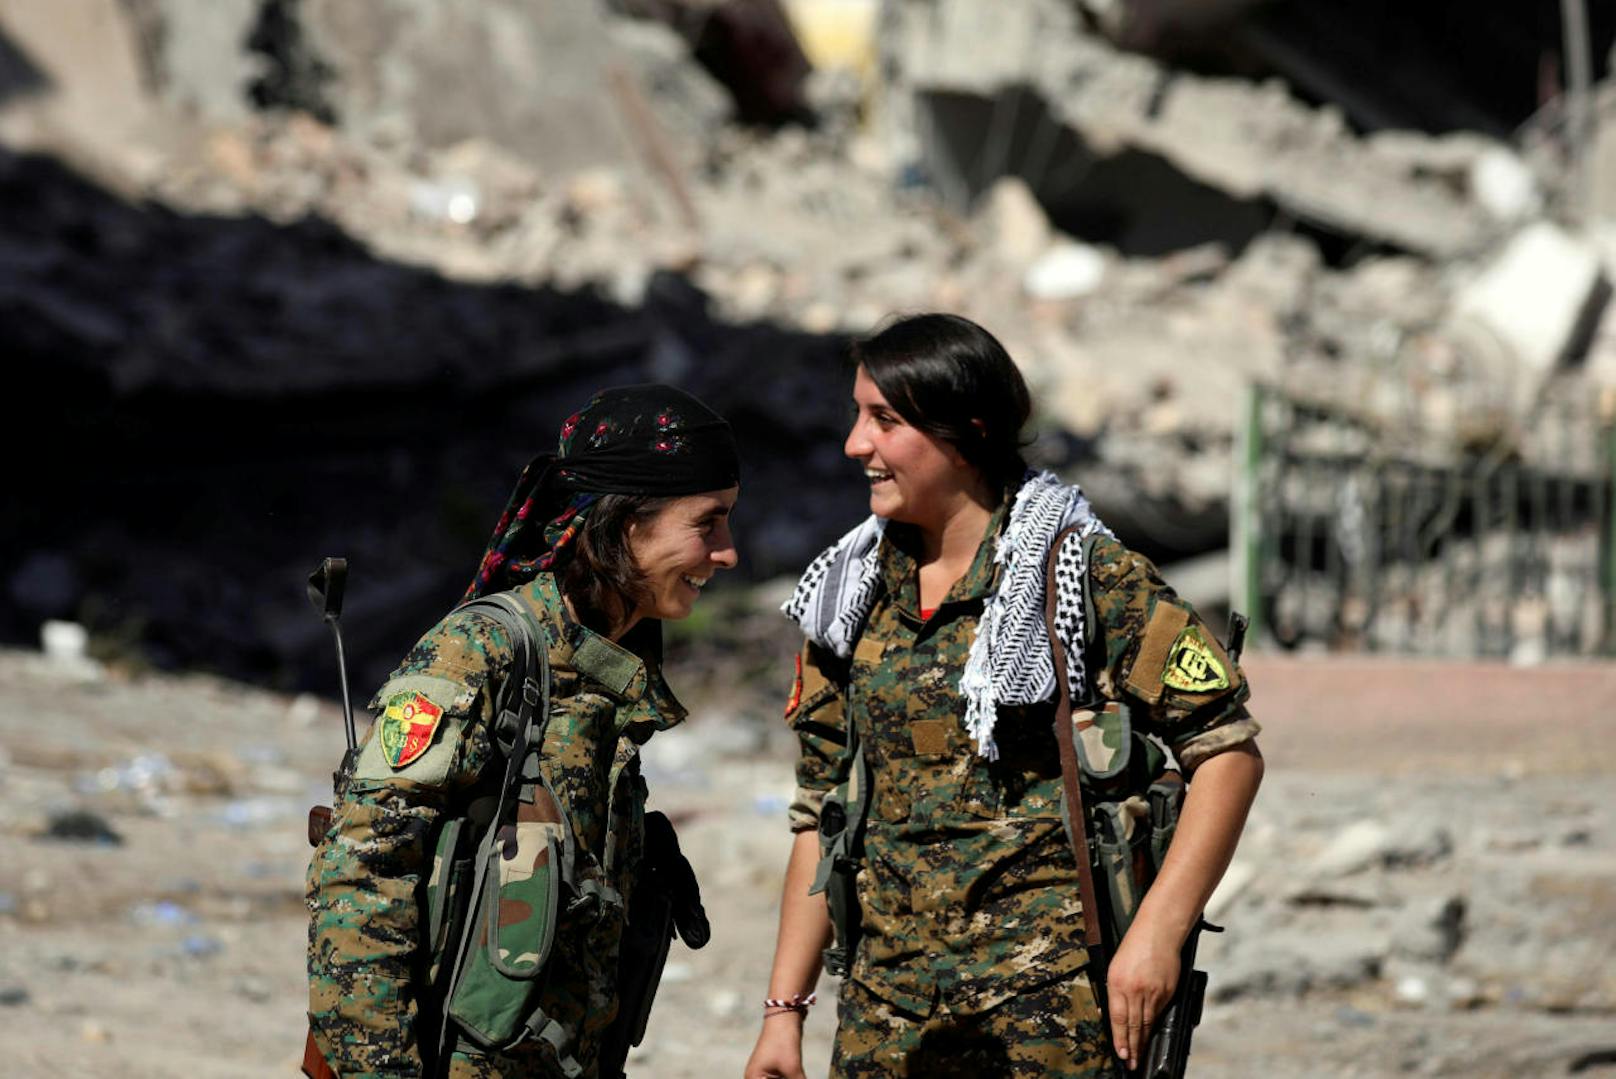 Besonders bitter für die Dschihadisten: Auch zahlreiche Frauen kämpften auf Seite der siegreichen Allianz.